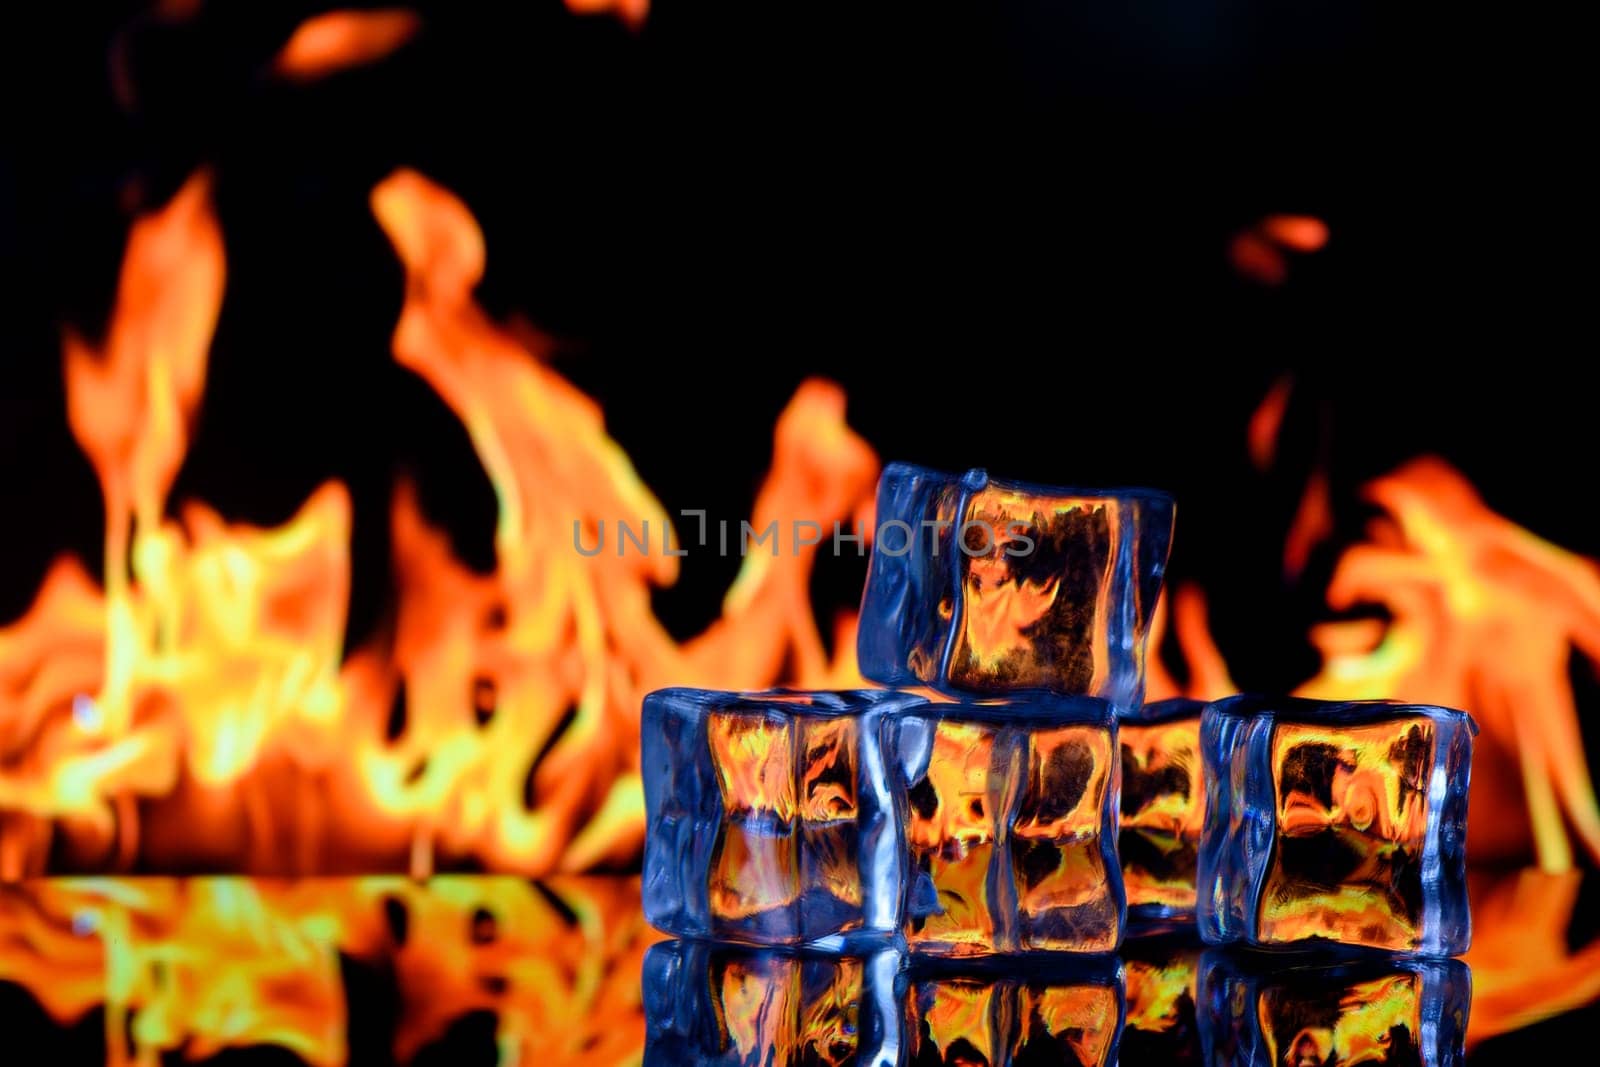 Burning ice cubes on black background 2 by Mixa74